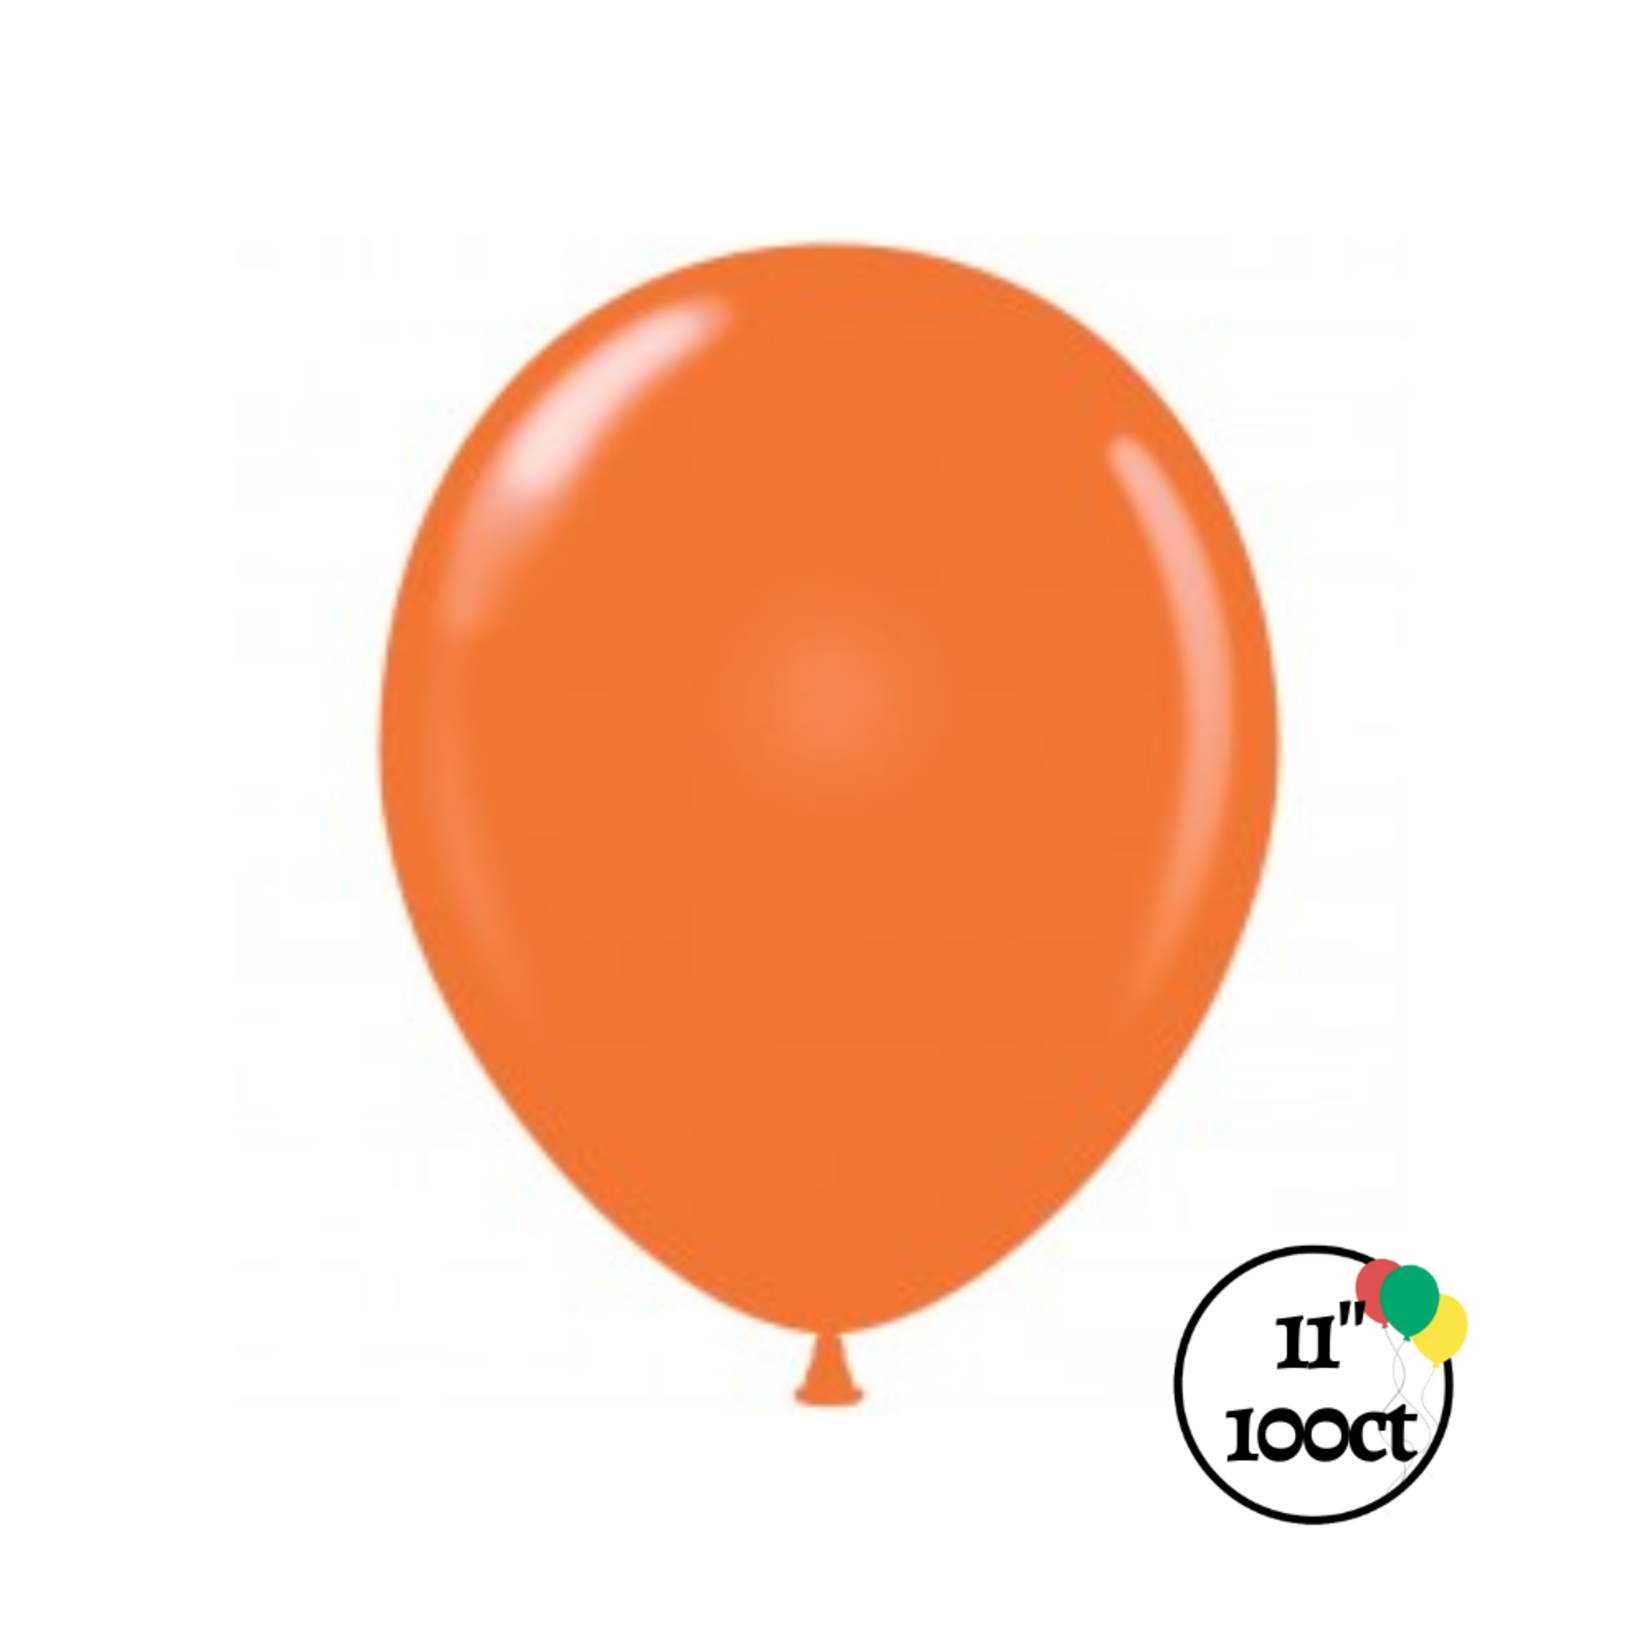 Tuftex 11"  Tuftex Orange Balloon 100ct